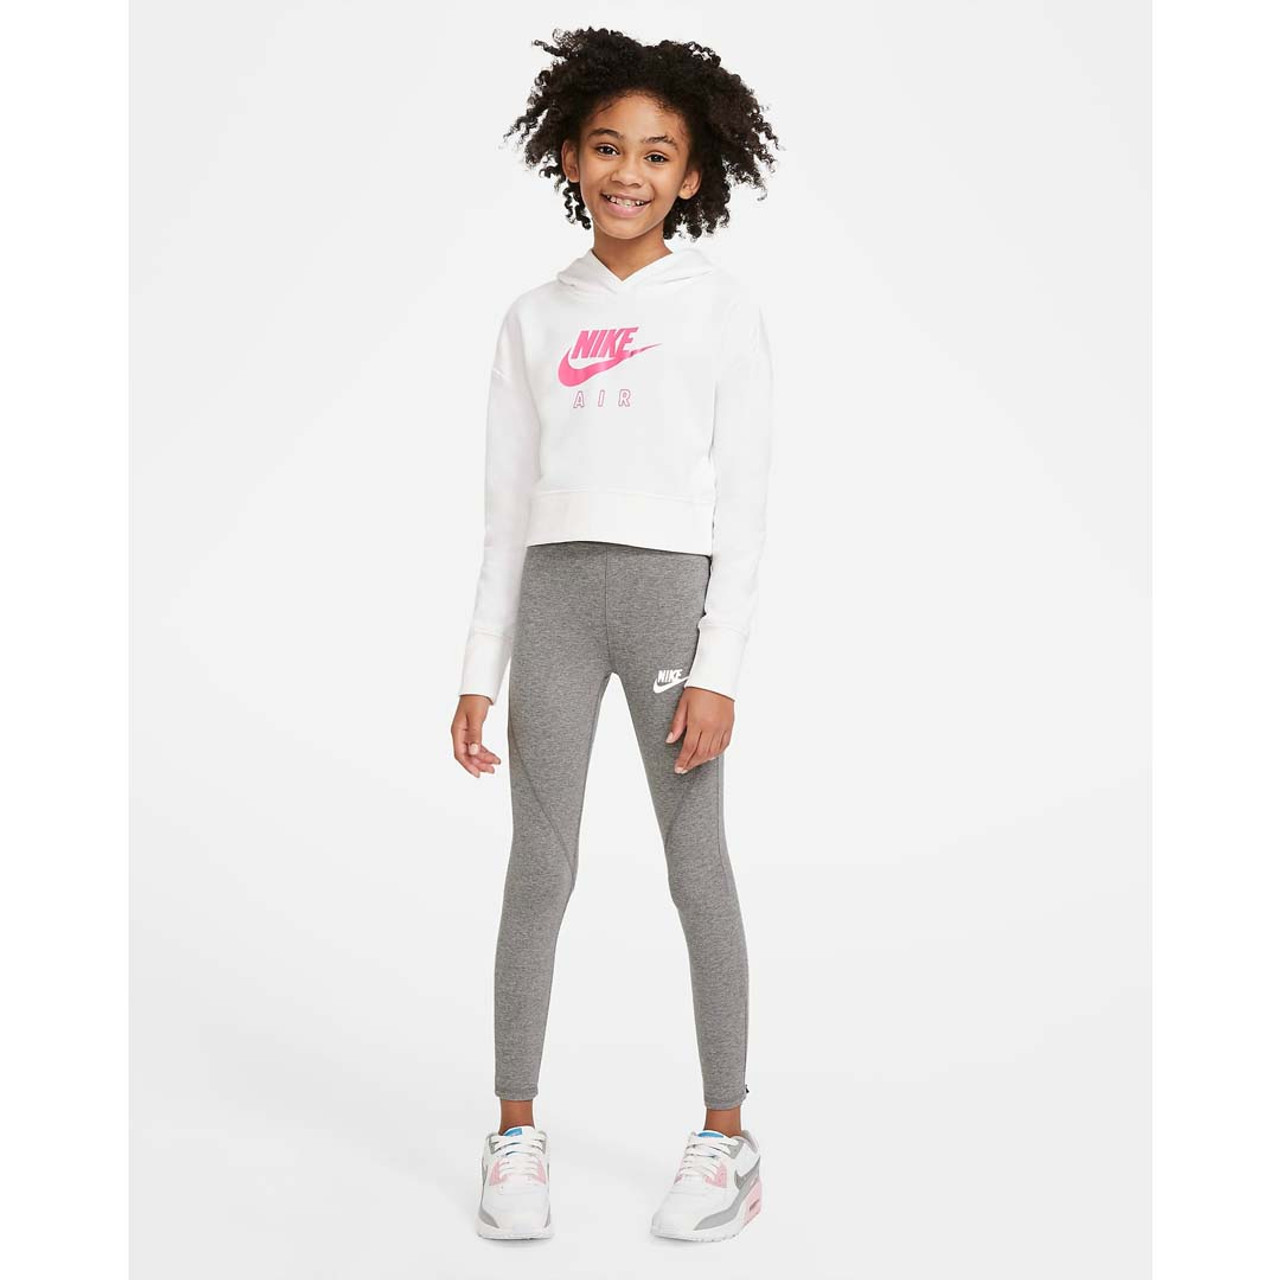 Nike Nike Sportswear Girls' High Waisted Leggings - Black/White $ 29.99